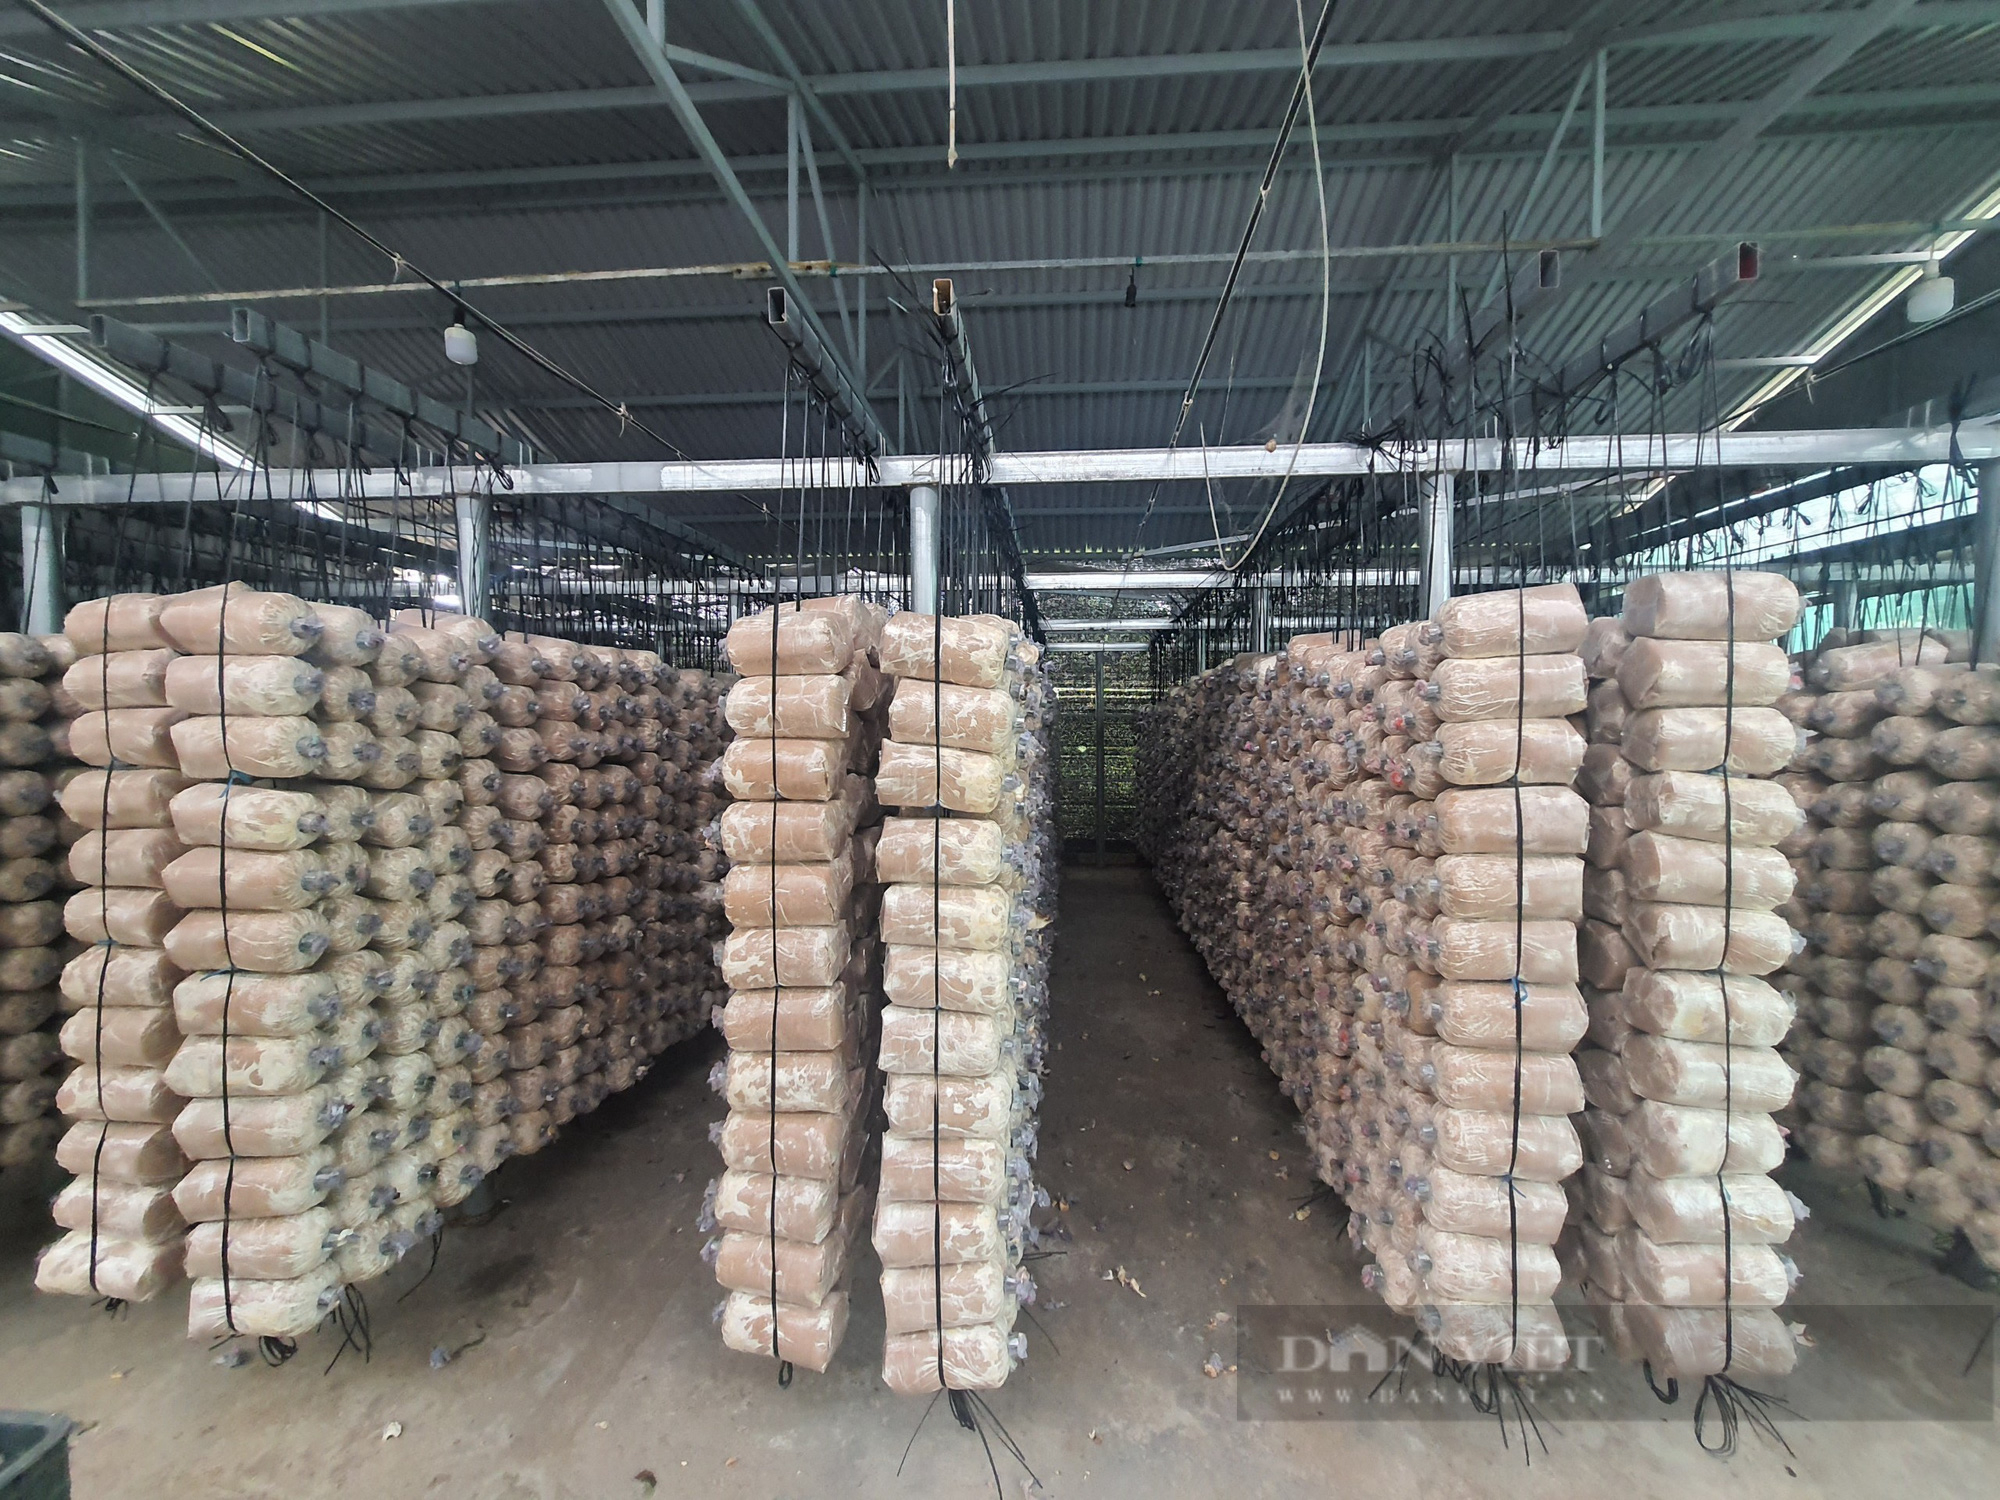 Có vốn ưu đãi tiếp sức - 9X Quảng Nam mạnh dạn khởi nghiệp trồng nấm, cho lãi hàng trăm triệu đồng - Ảnh 6.